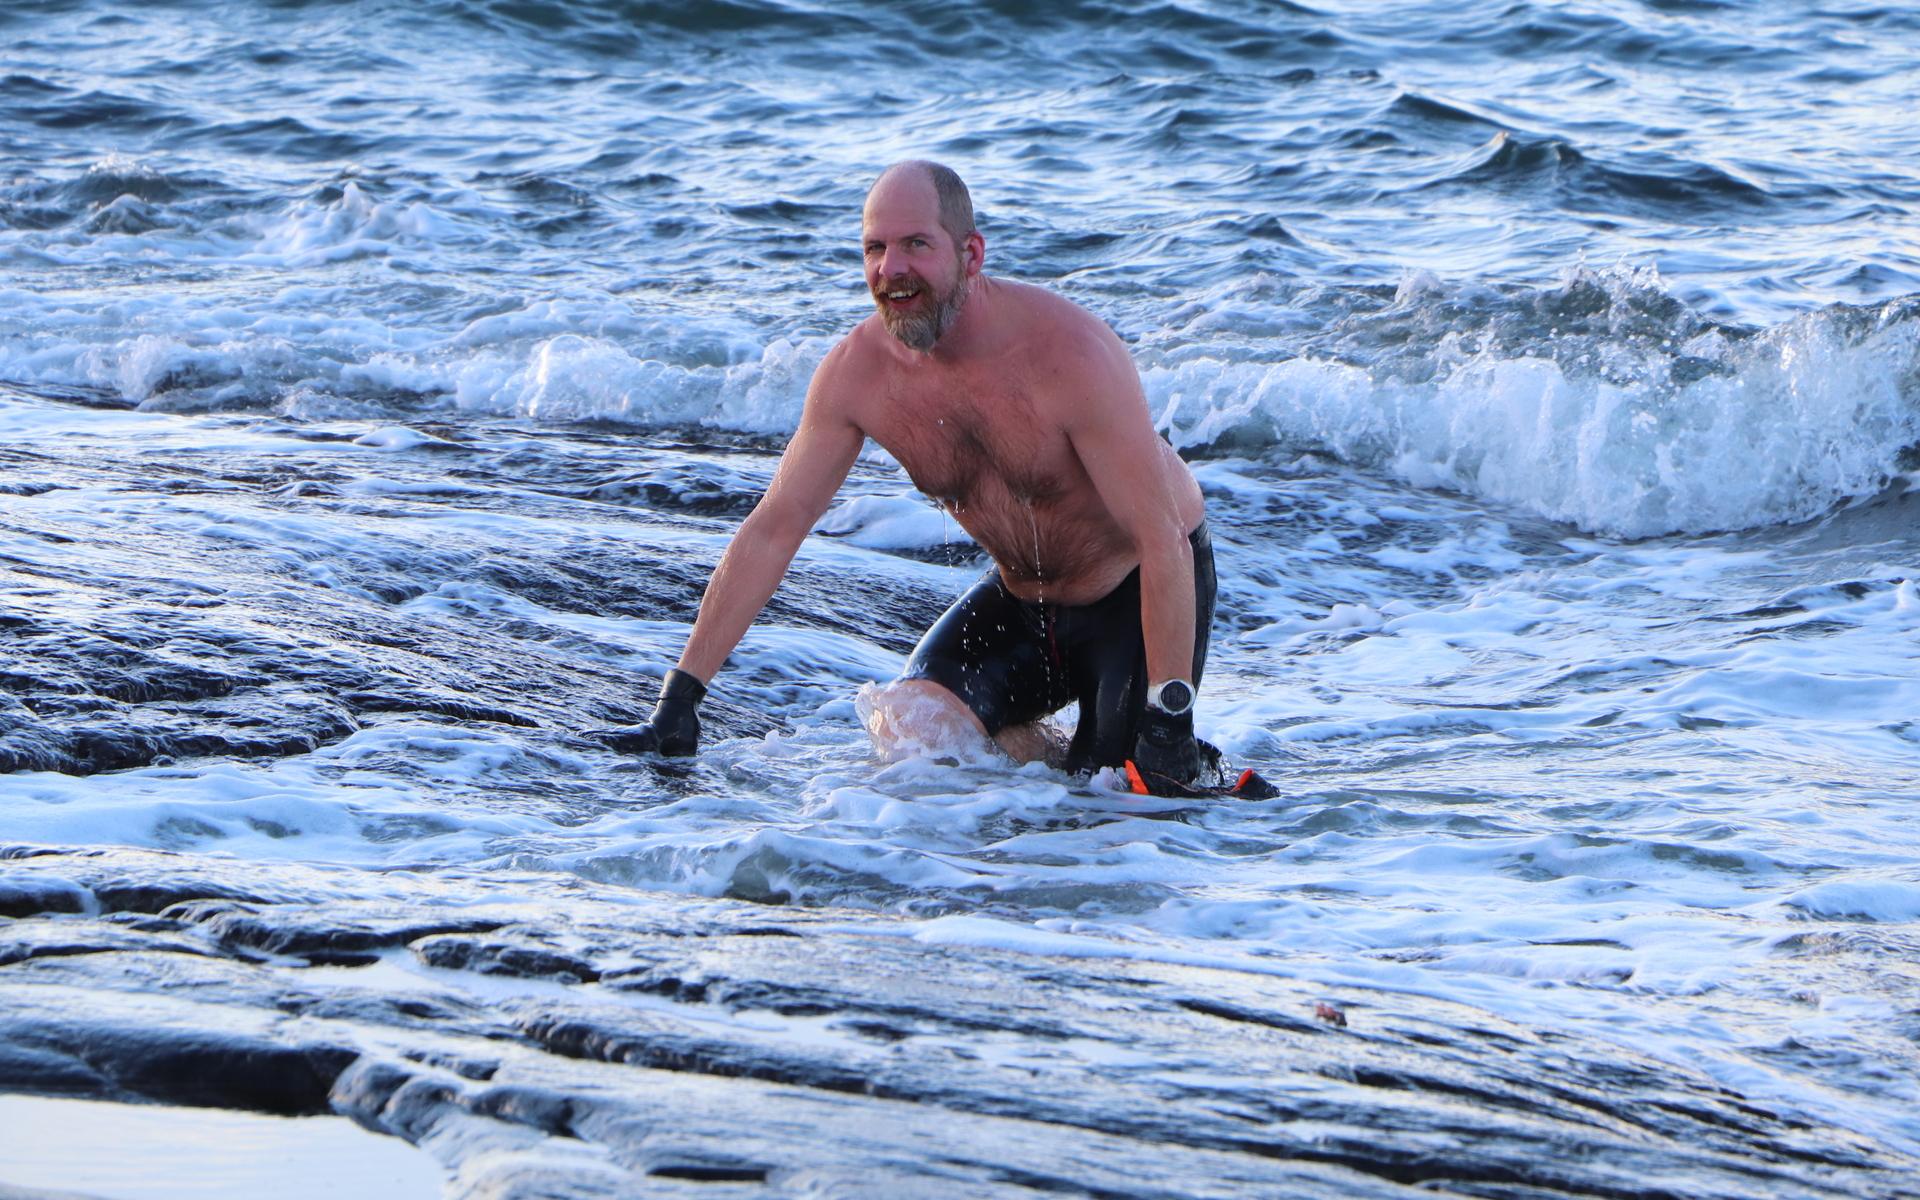 ”Huden blir som pansar,” förklarar Robert som anser att simningen i havet så här års ger en levande känsla. 